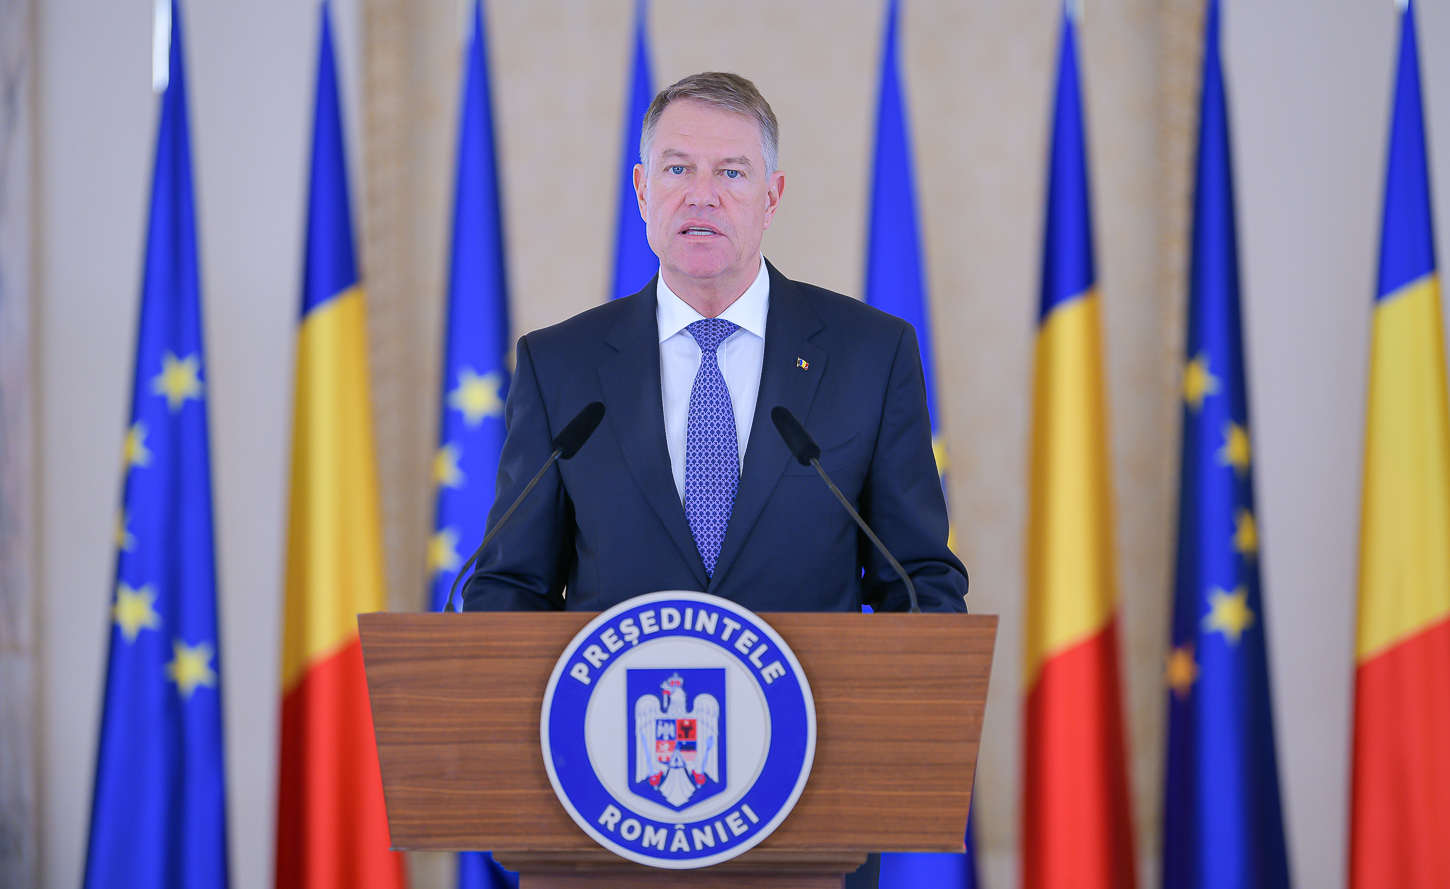 S-au semnat decretele: Cine sunt noii ambasadorii români, desemnați de șeful statului